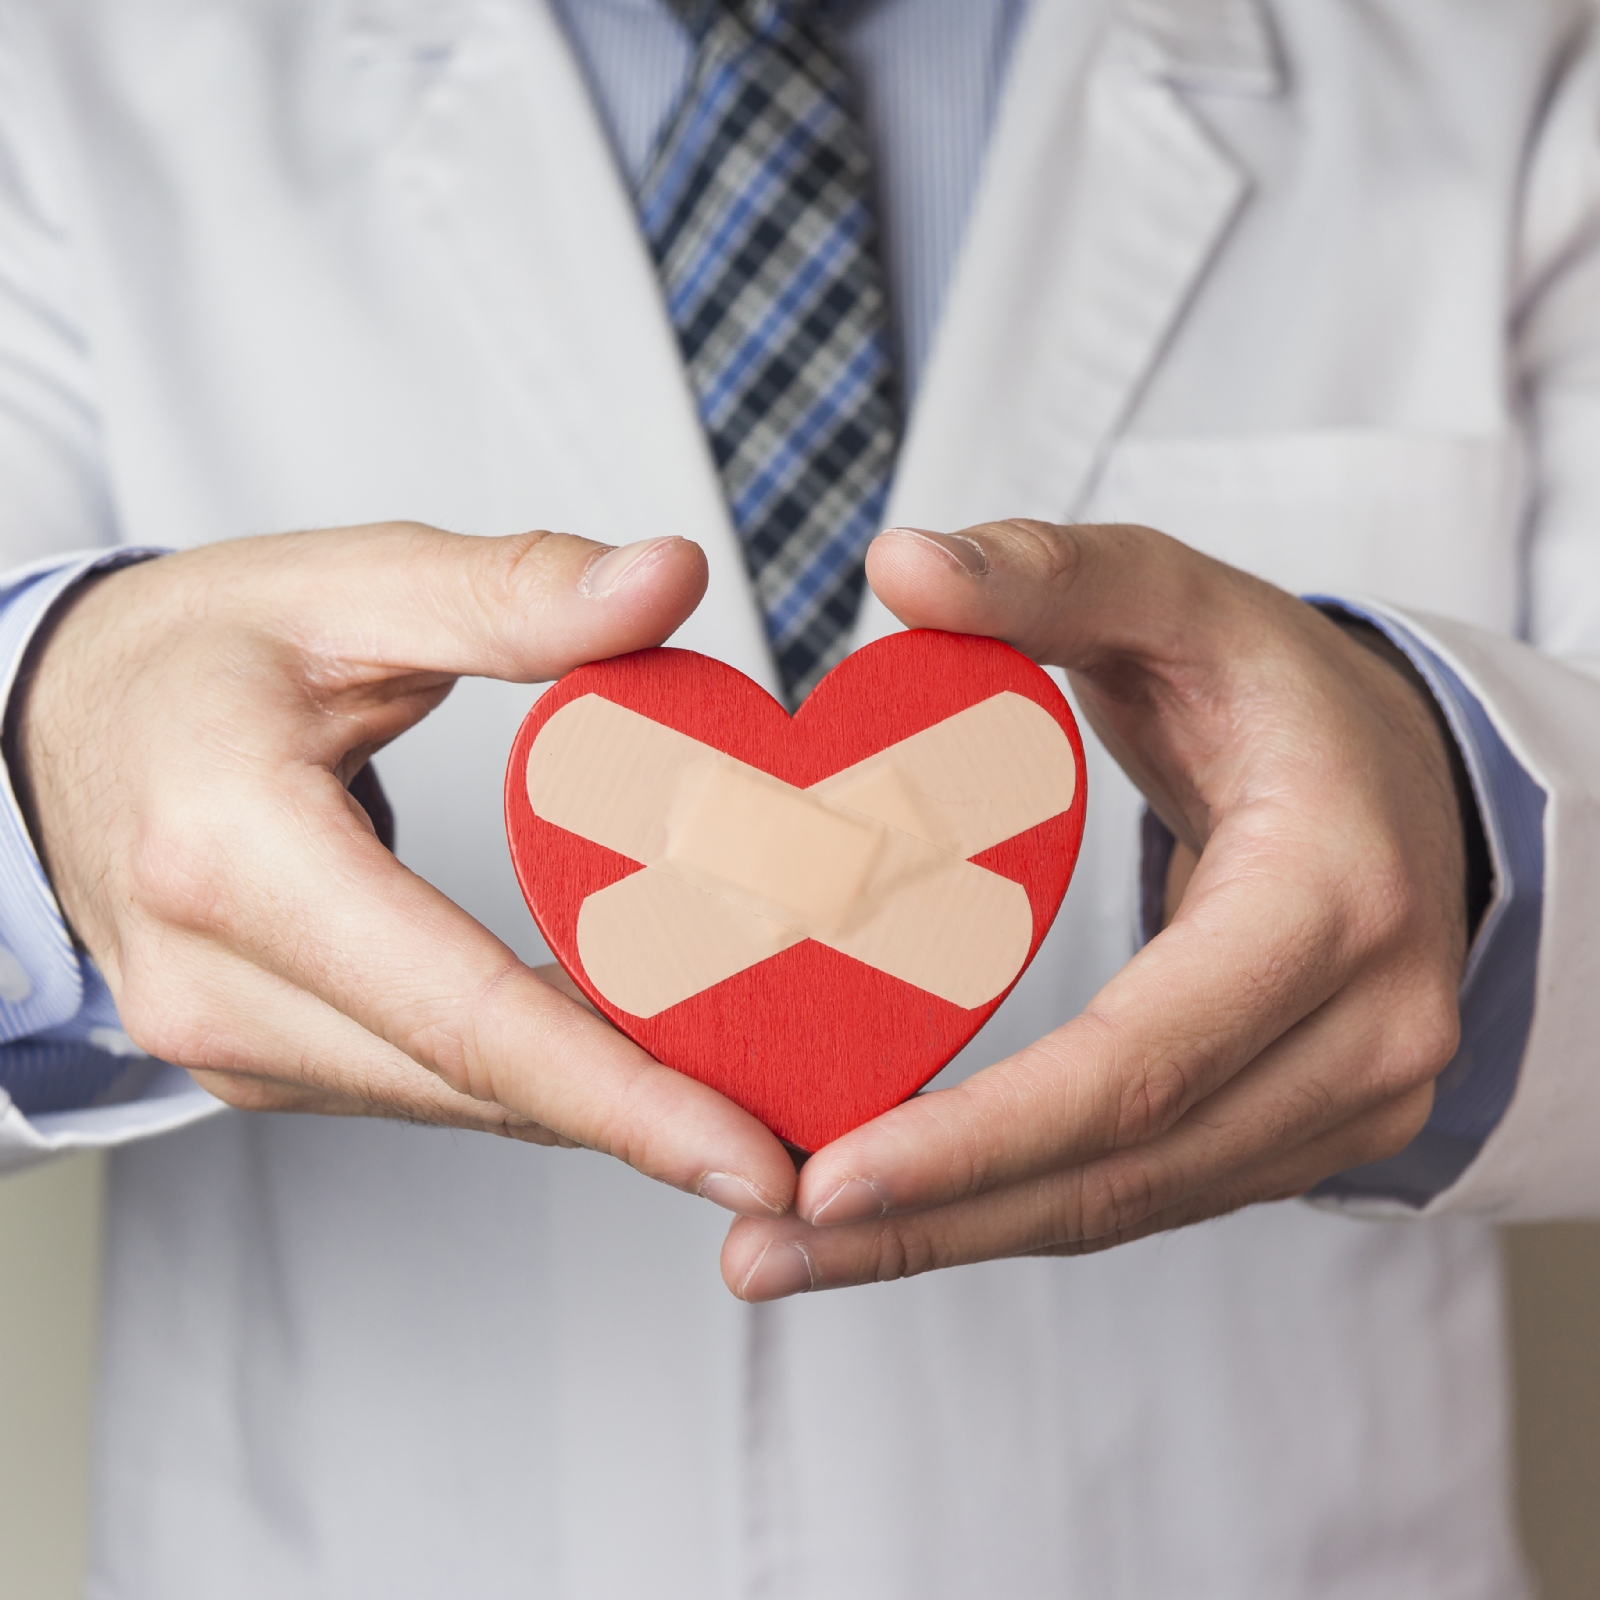 Síndrome del corazón roto: qué es y cuáles son sus síntomas